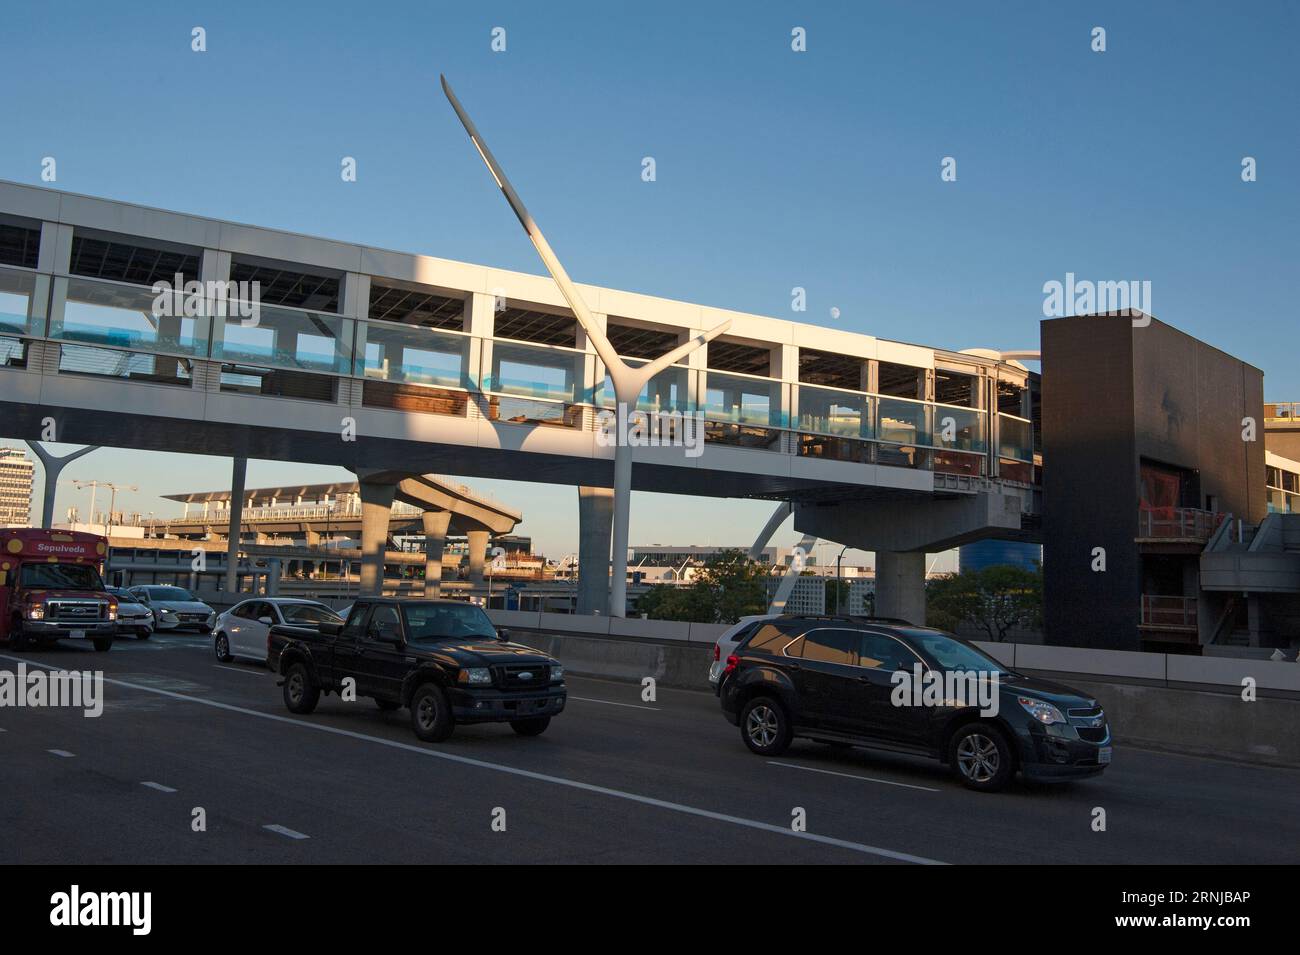 La circulation automobile au niveau d'arrivée de l'aéroport LAX passe sous un pont piétonnier avec la station de métro nouvellement installée en arrière-plan. Banque D'Images